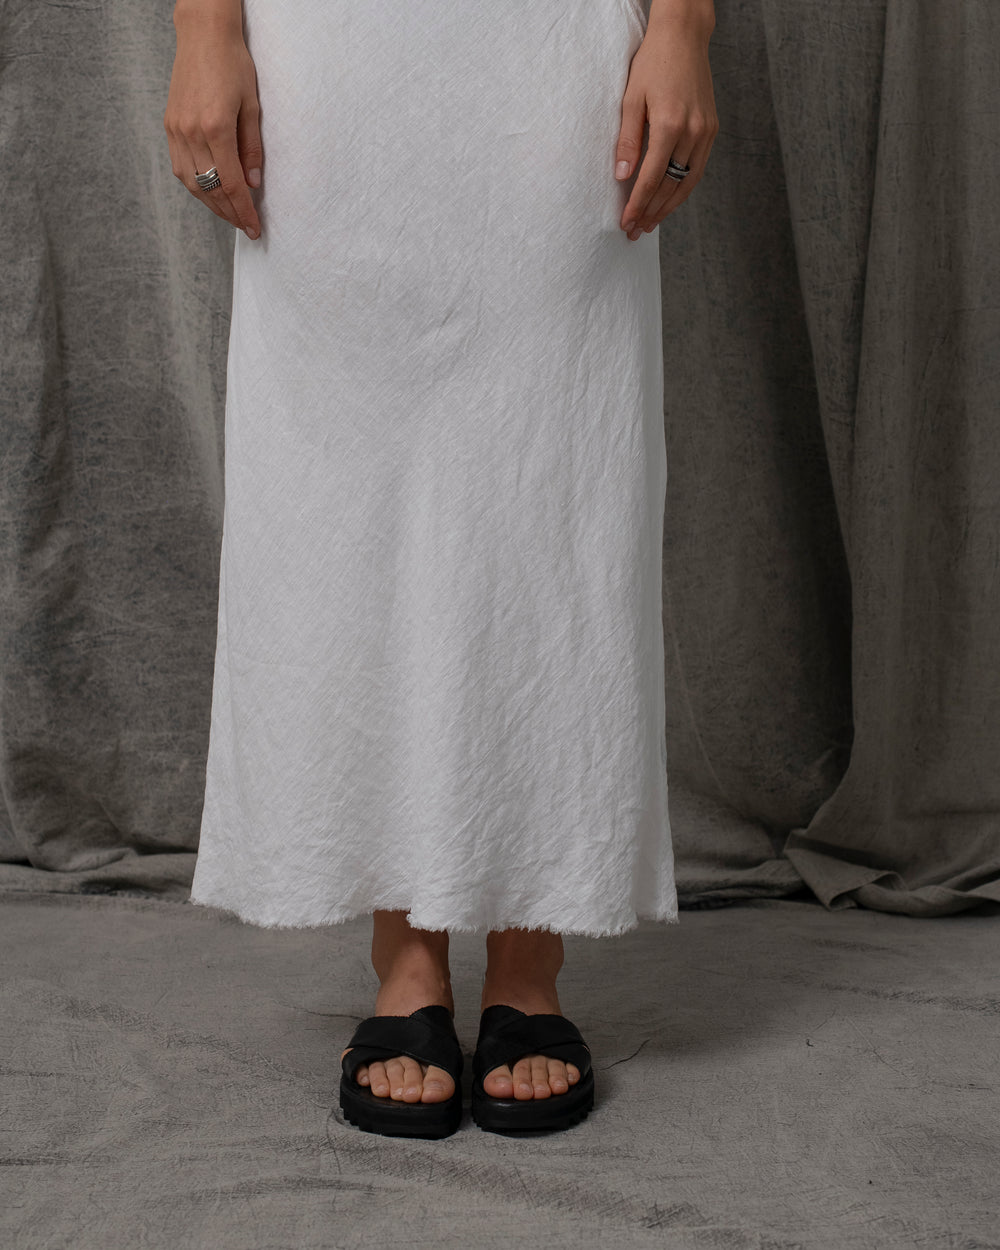 Sia Dress Linen White